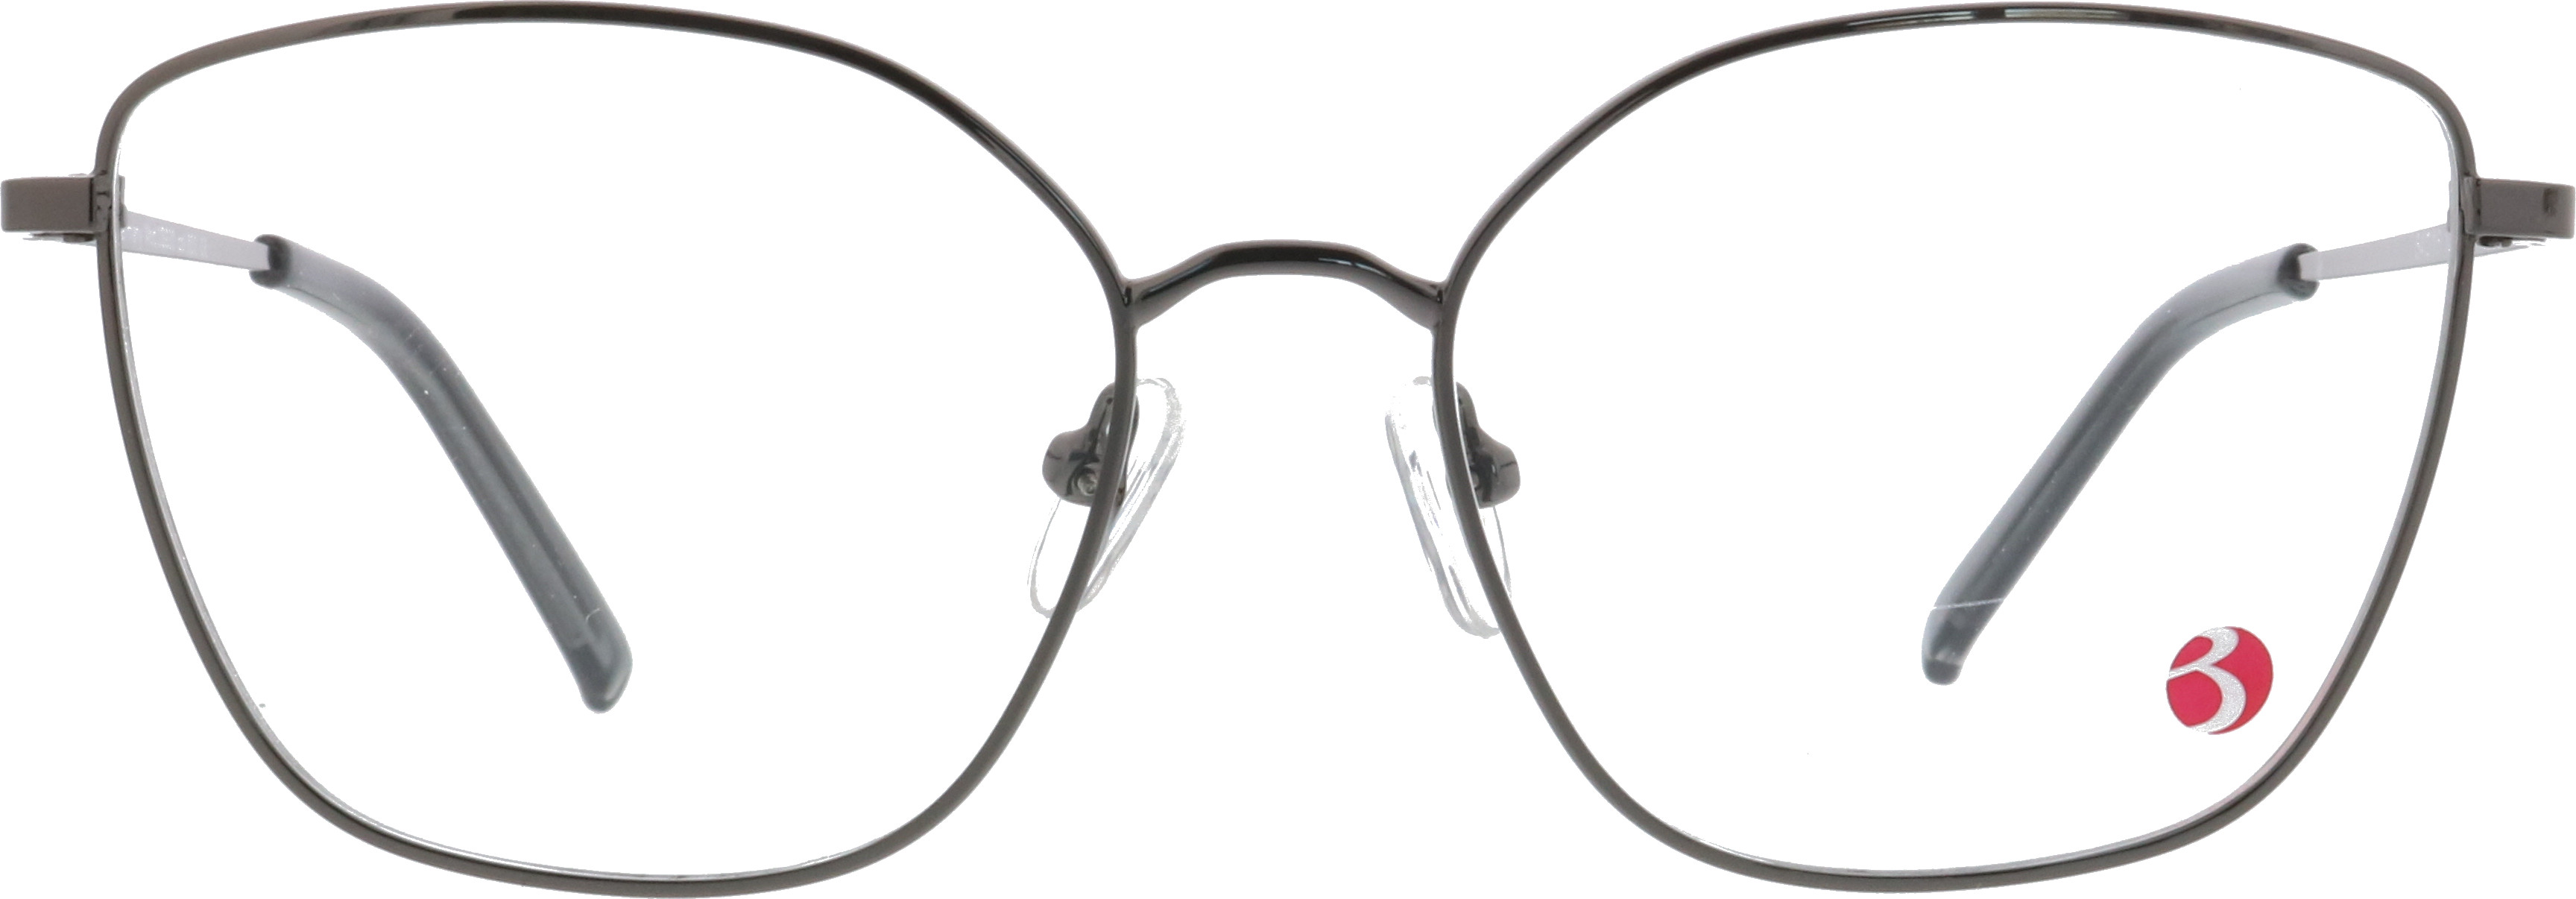 Blaufilter Brillen kaufen  3 Brillen für 69€ –